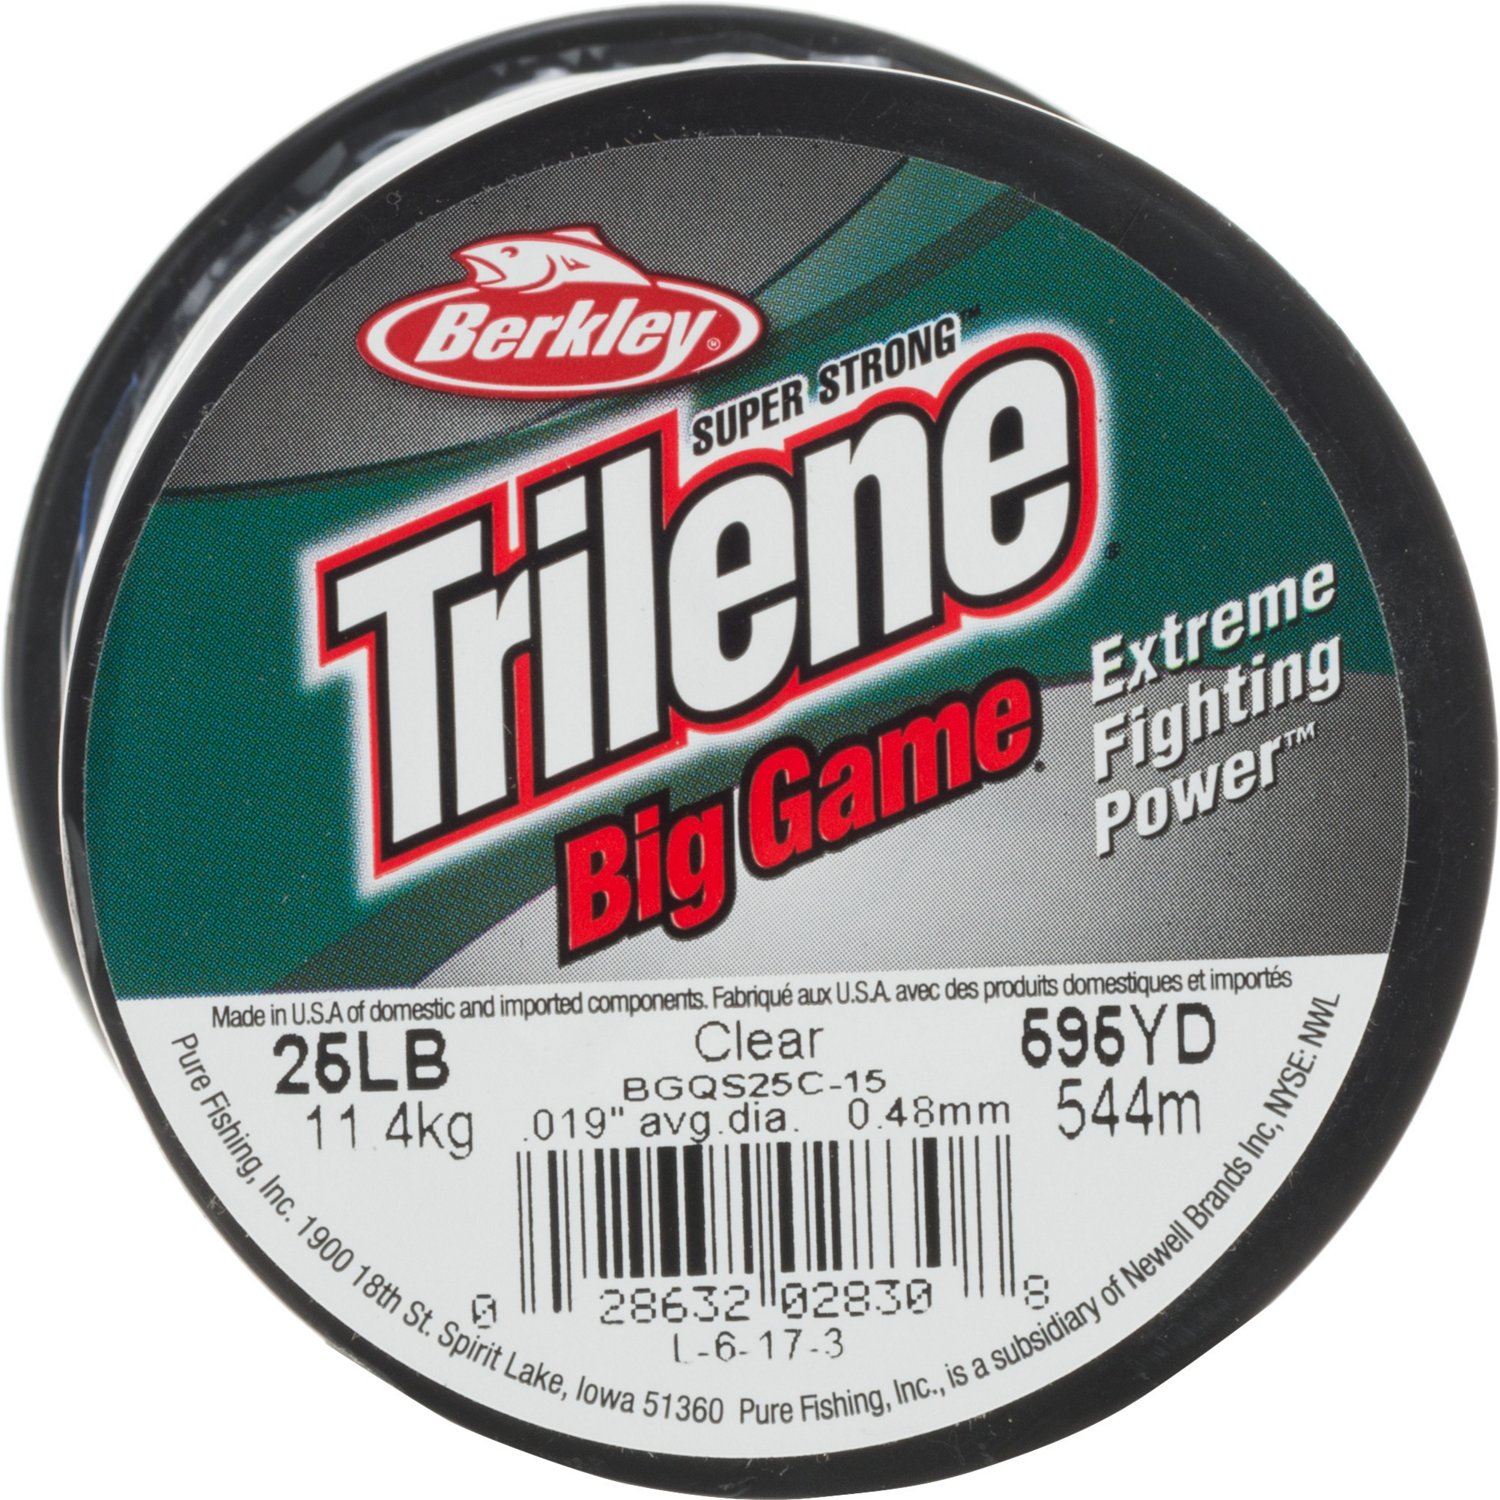 Berkley Trilene Big Game 25 lb